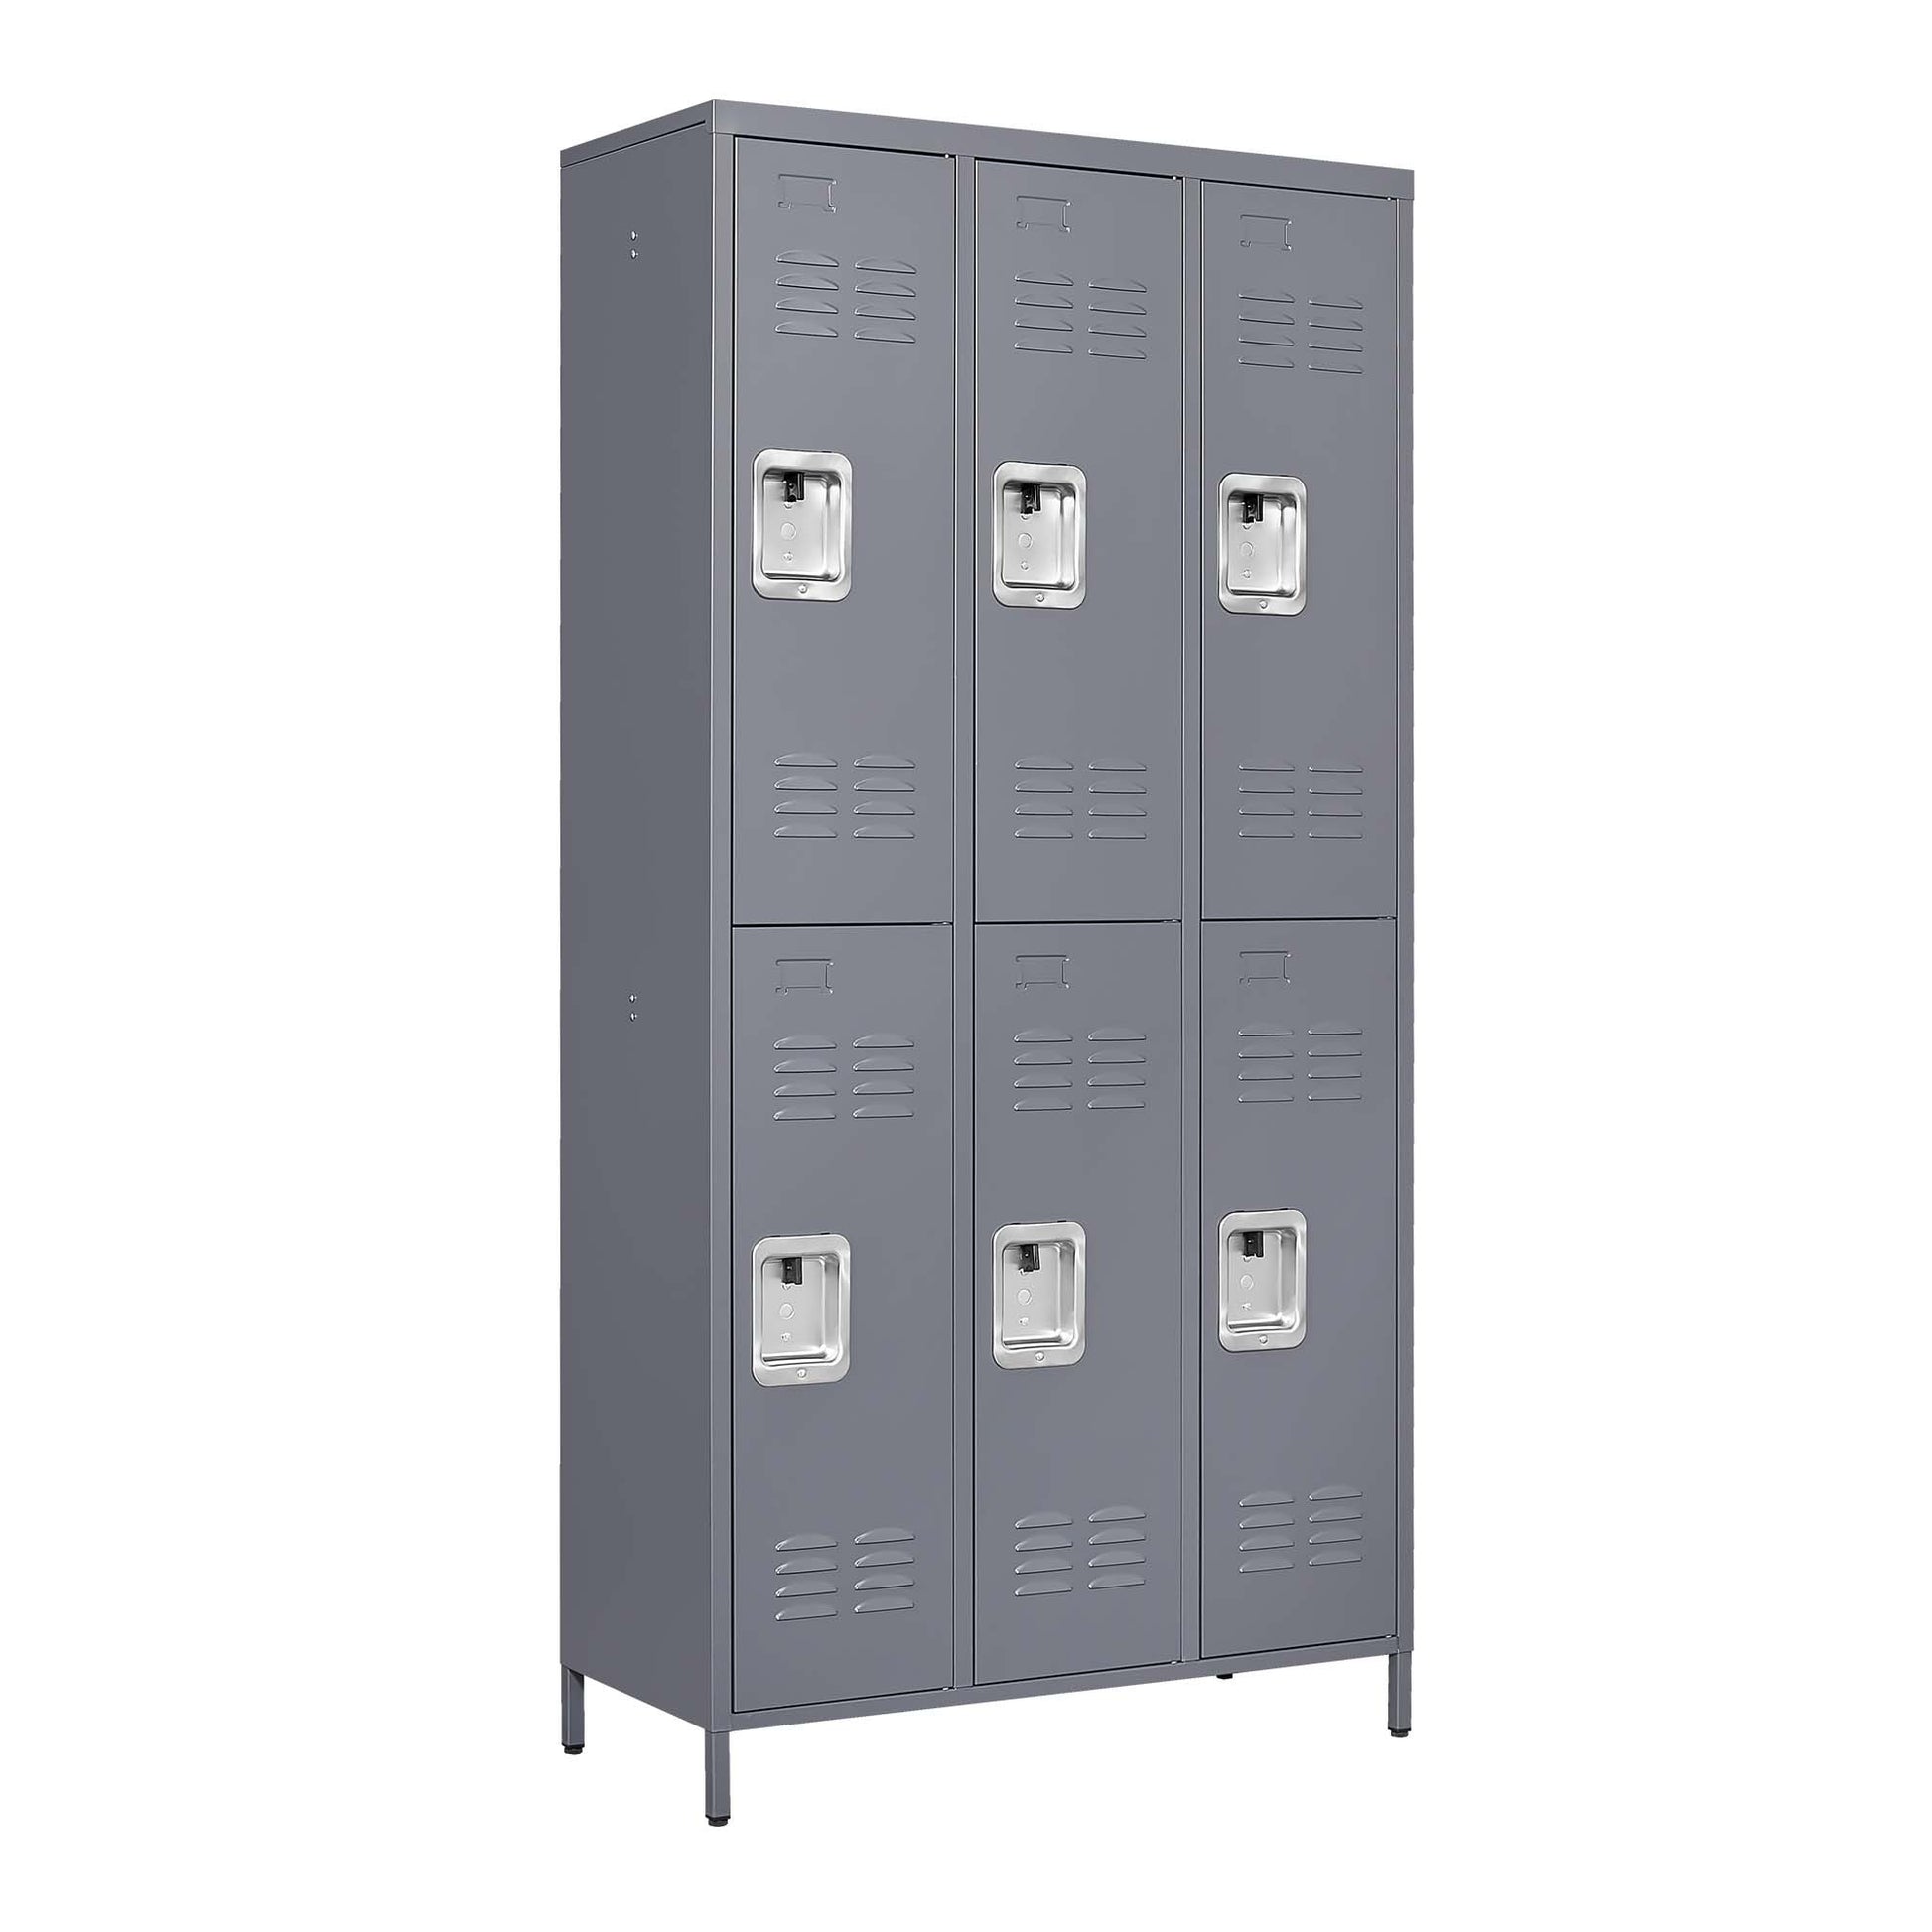 6 Door 72"H Metal Lockers With Lock for freestanding-5 or more spaces-gray-gym-door